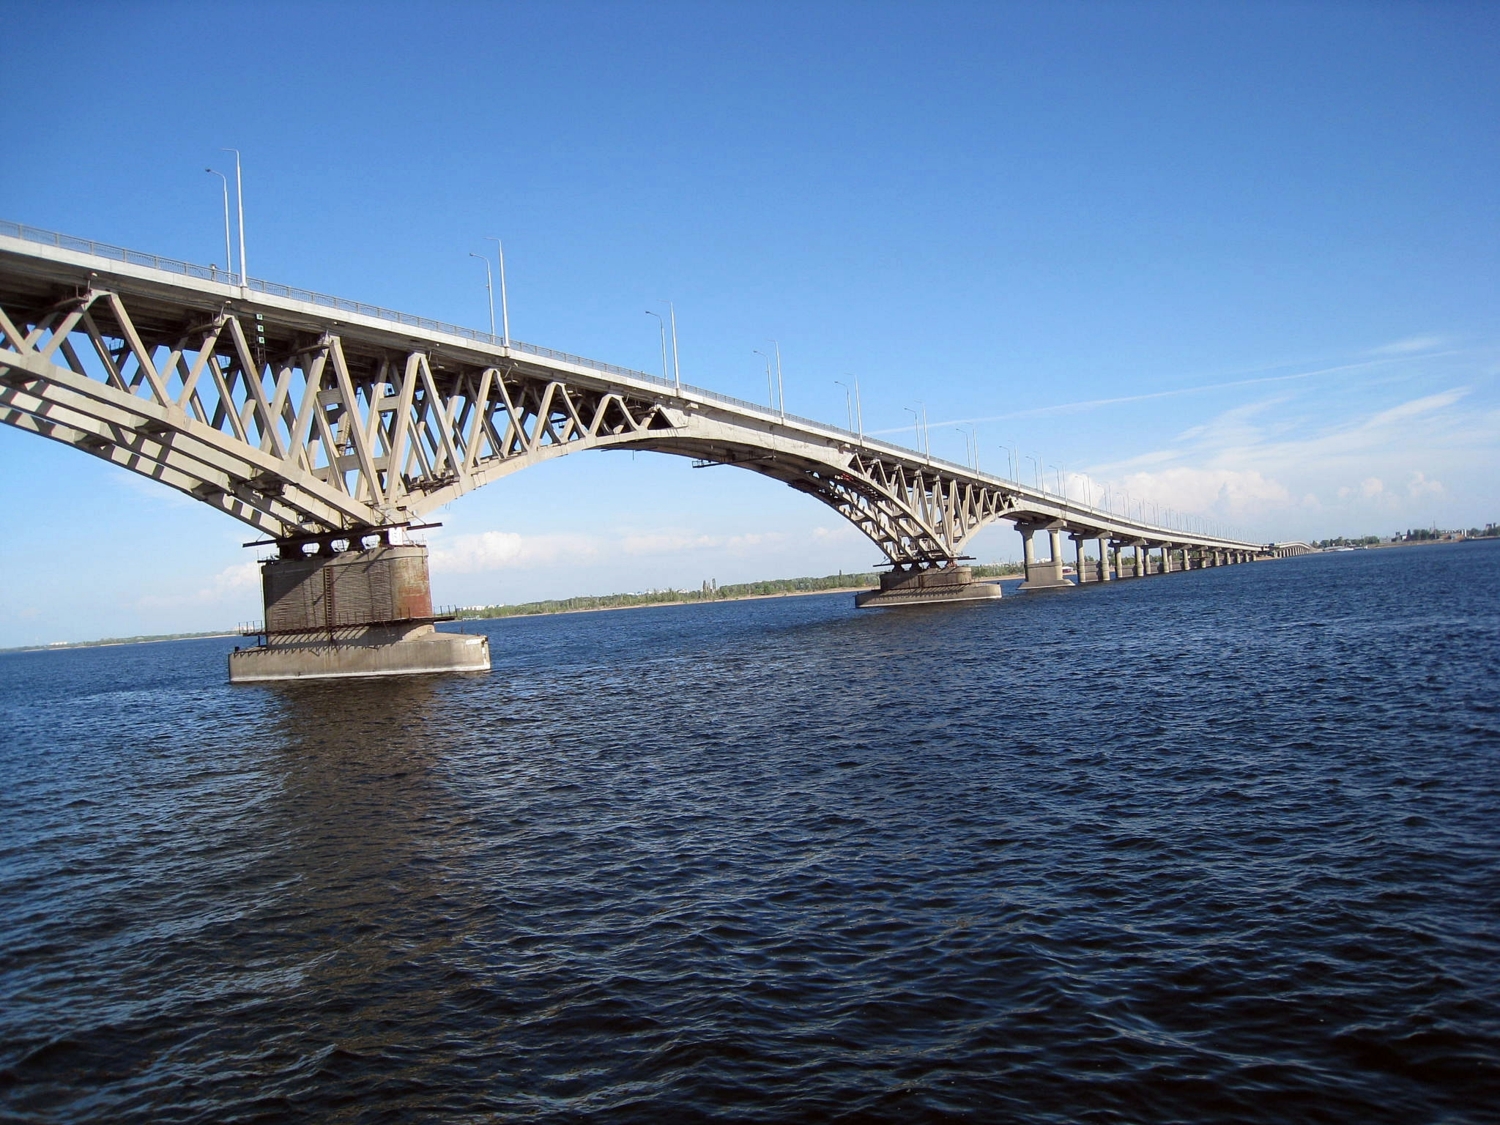 мост Саратов-Энгельс